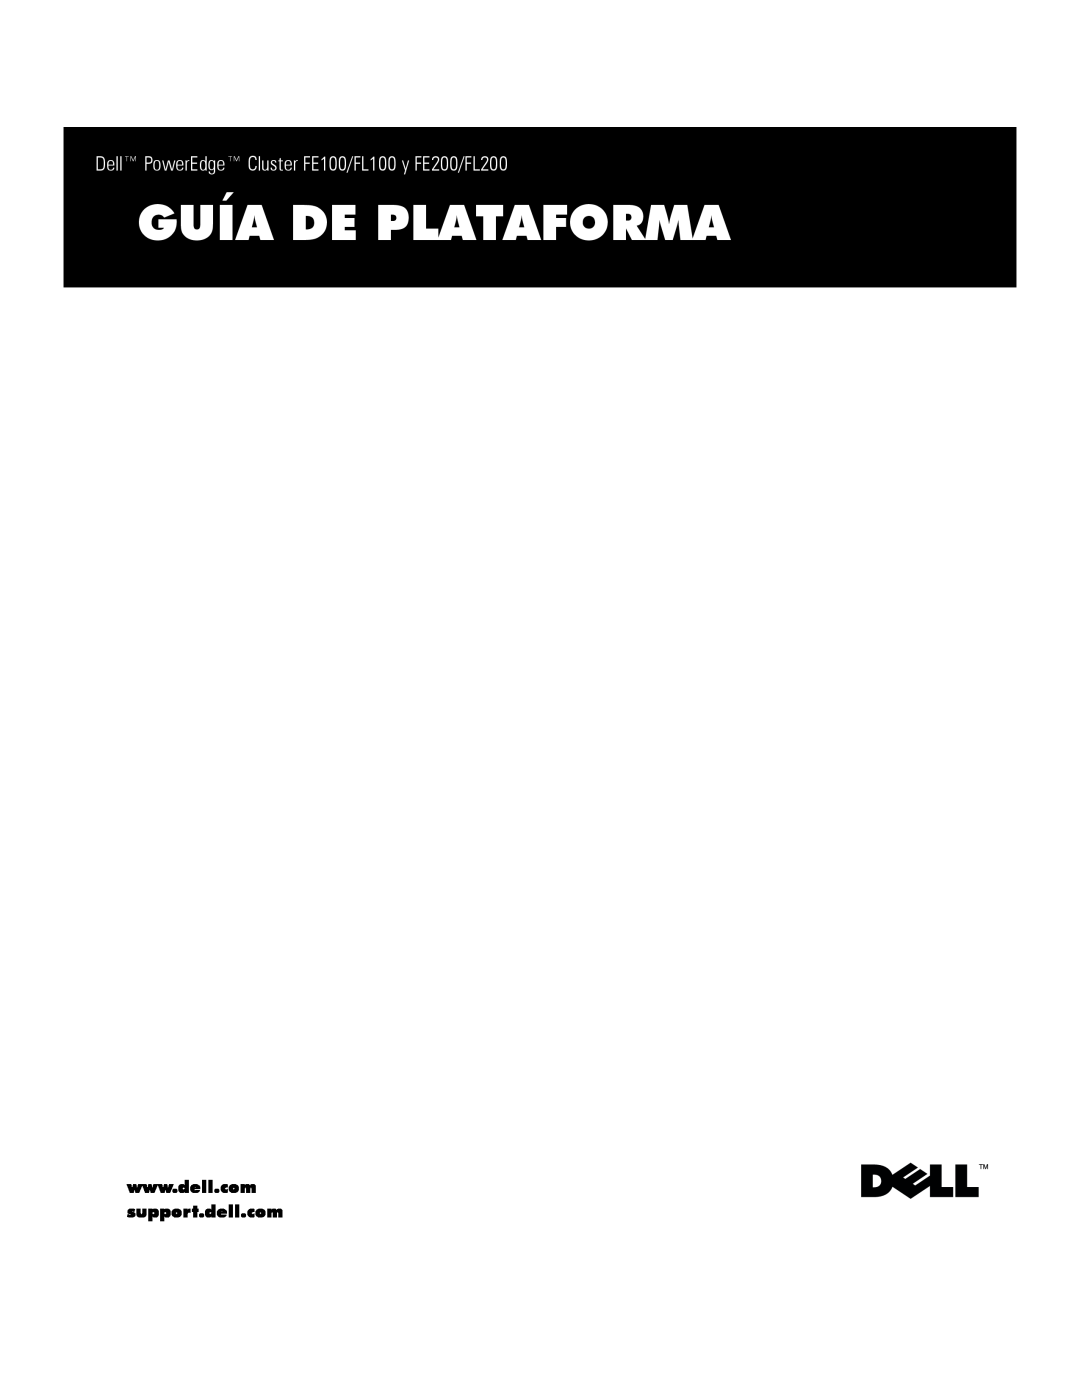 Dell manual Guía De Plataforma, Dell PowerEdge Cluster FE100/FL100 y FE200/FL200 